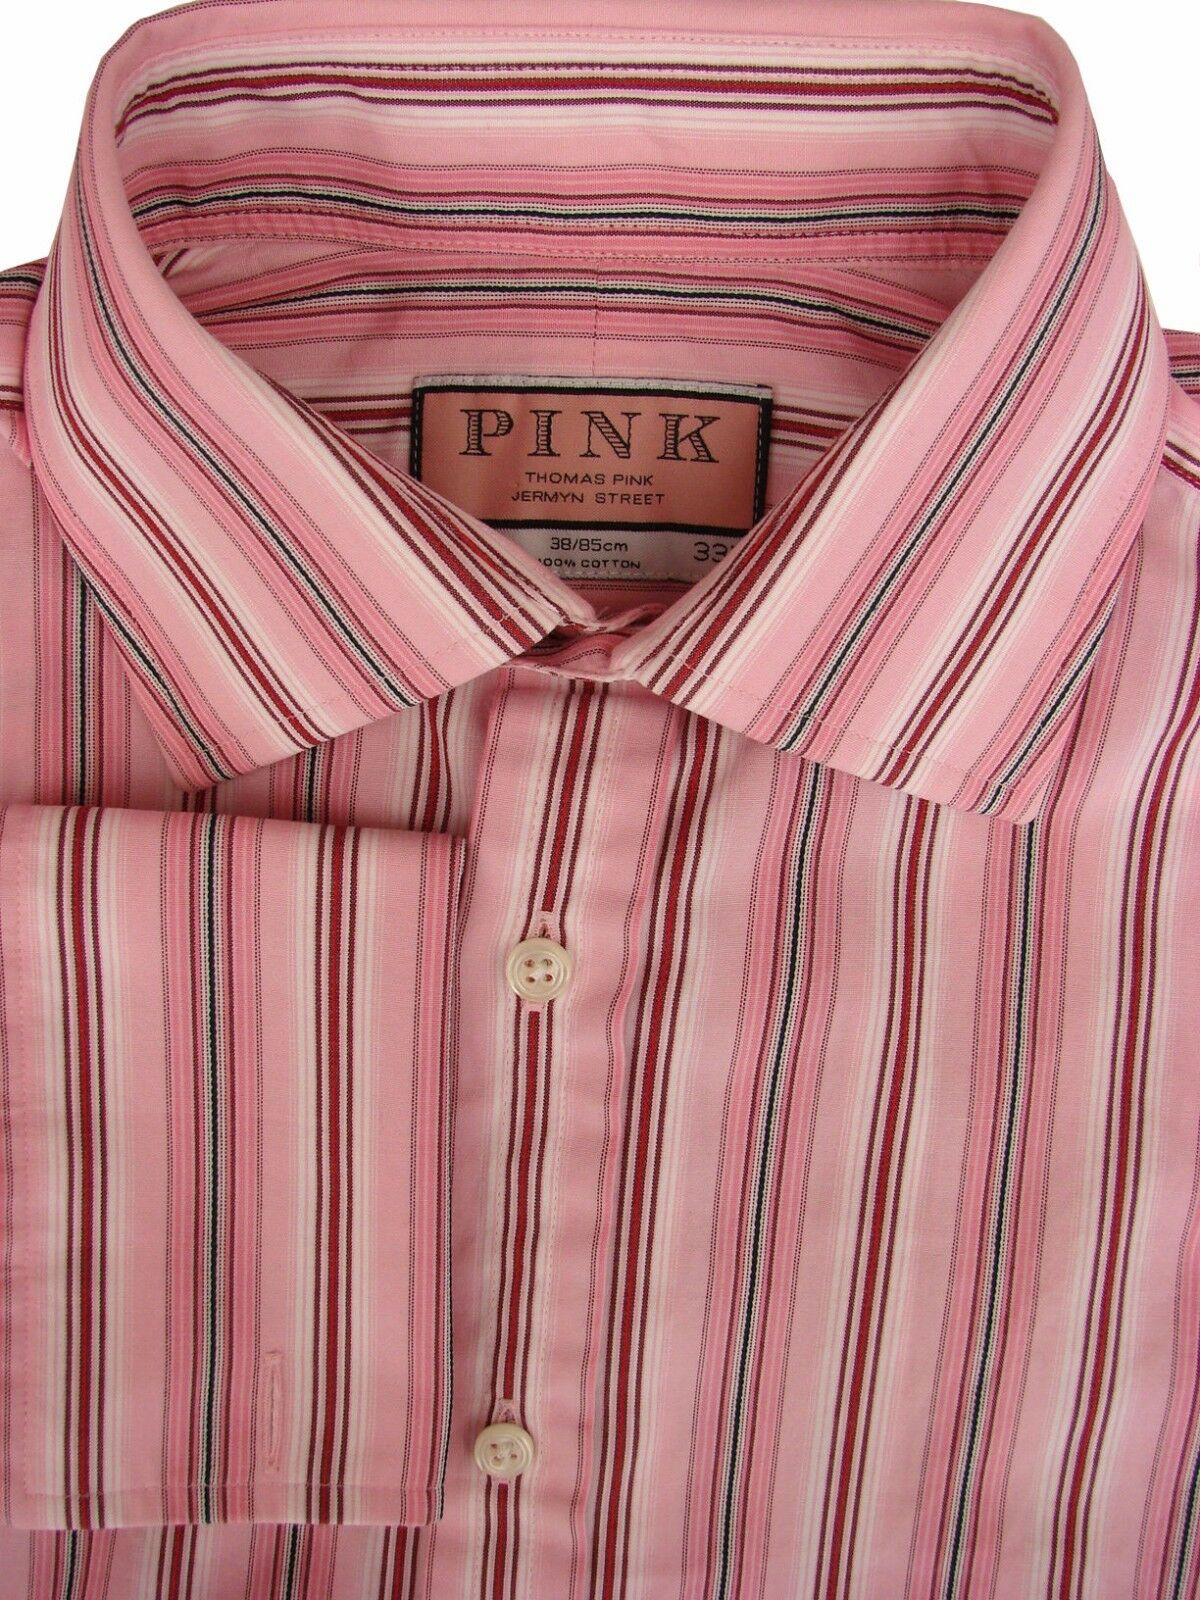 thomas pink tie  Thomas pink, Fashion aesthetics, Mens shirts